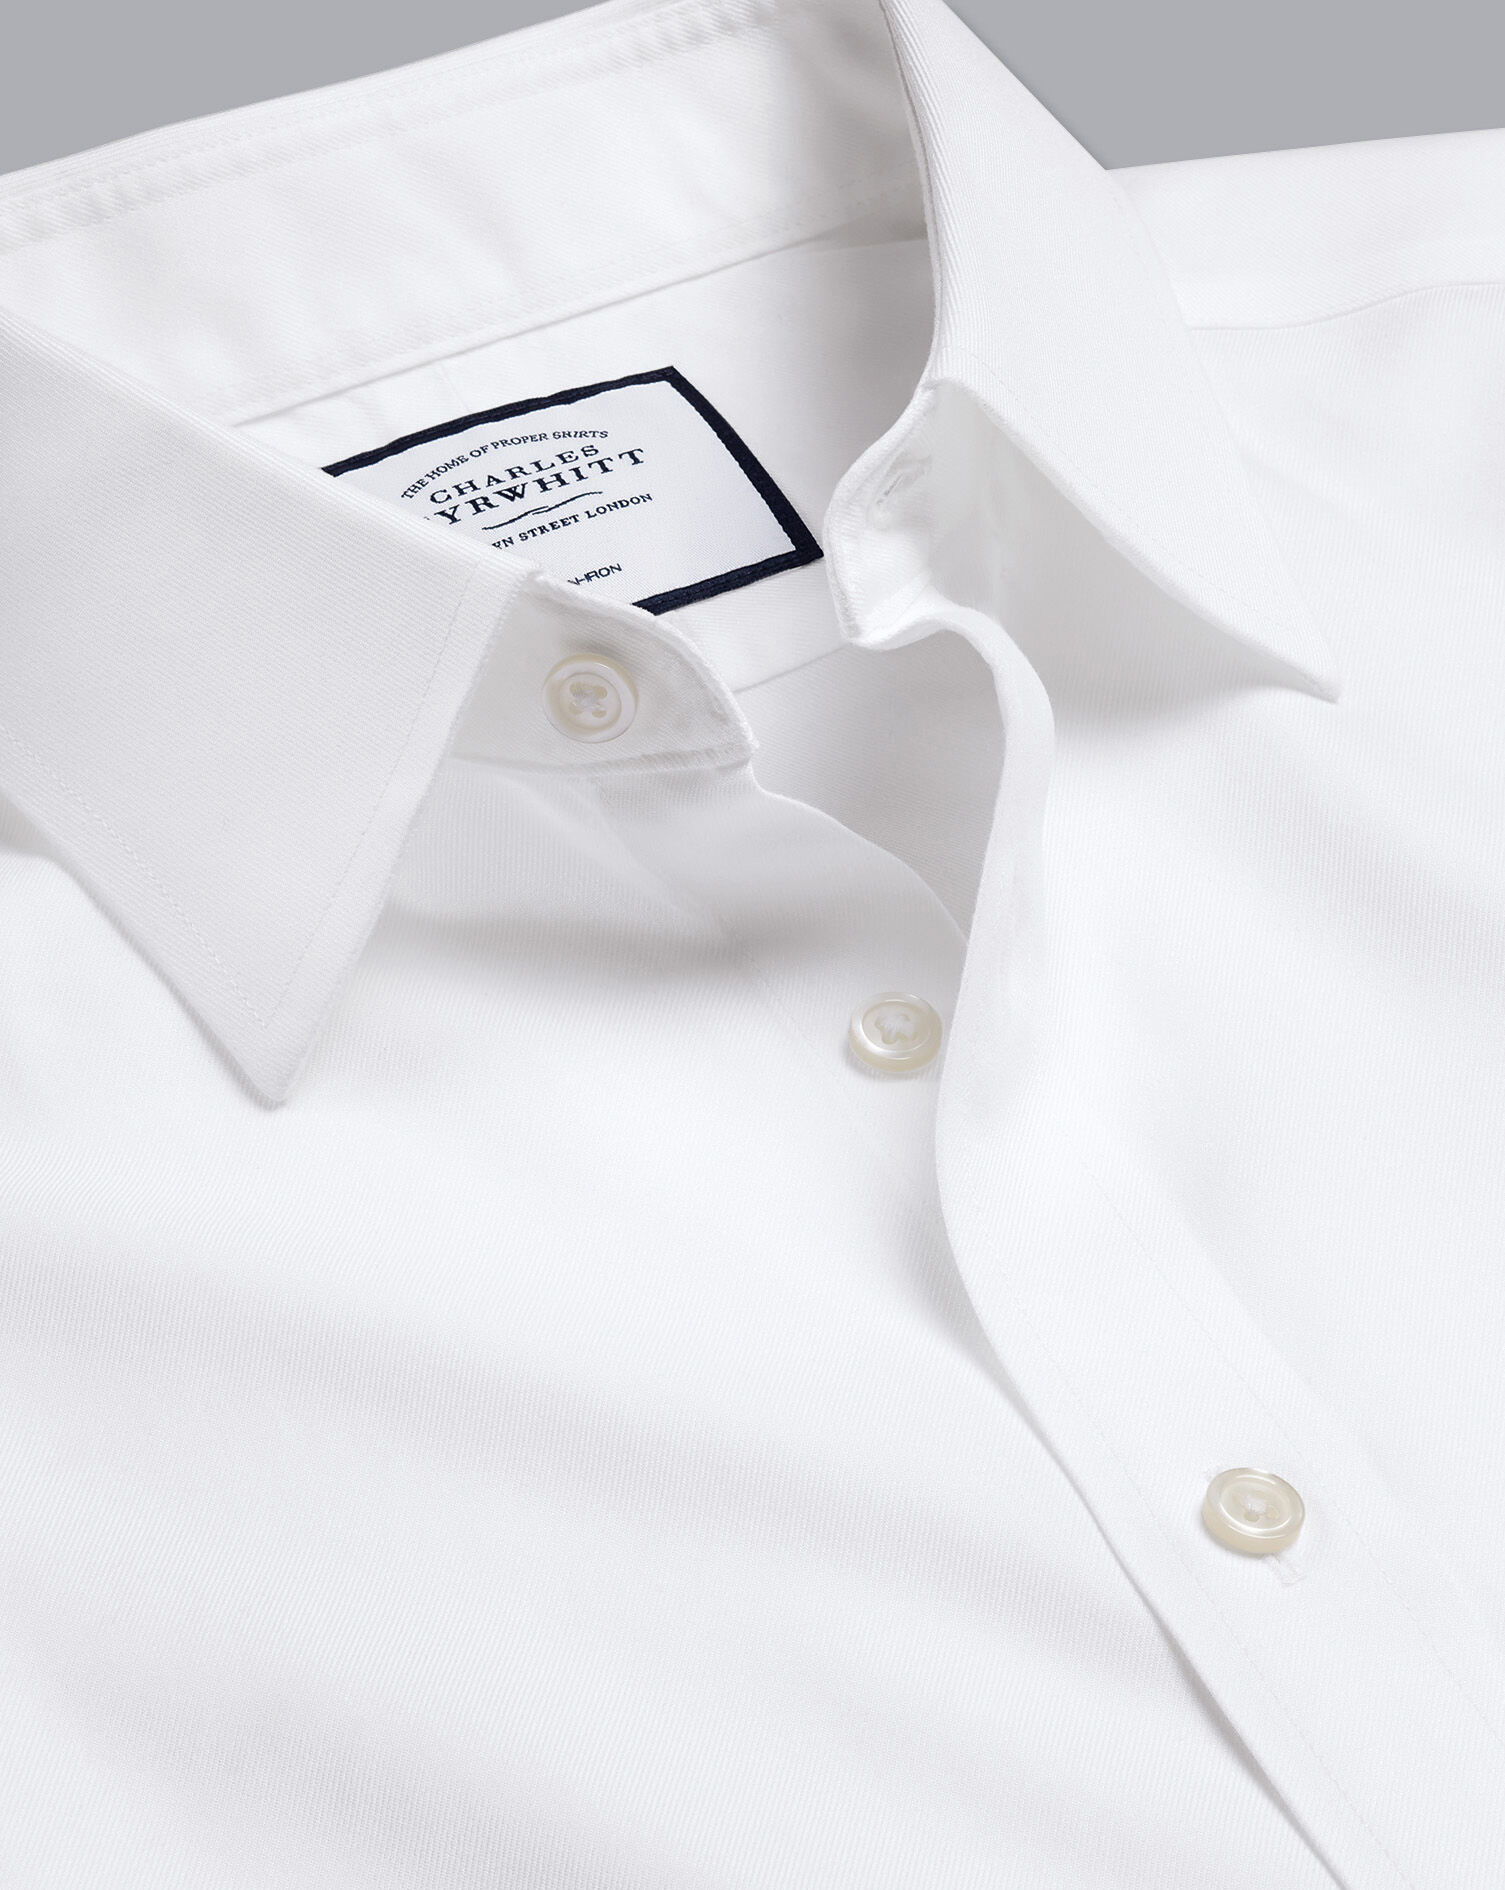 Kleding Herenkleding Overhemden & T-shirts Overhemden Charles Trywhitt Men's Luxury 16 1/2-33 Long Sleeve White Button Up Shirt 